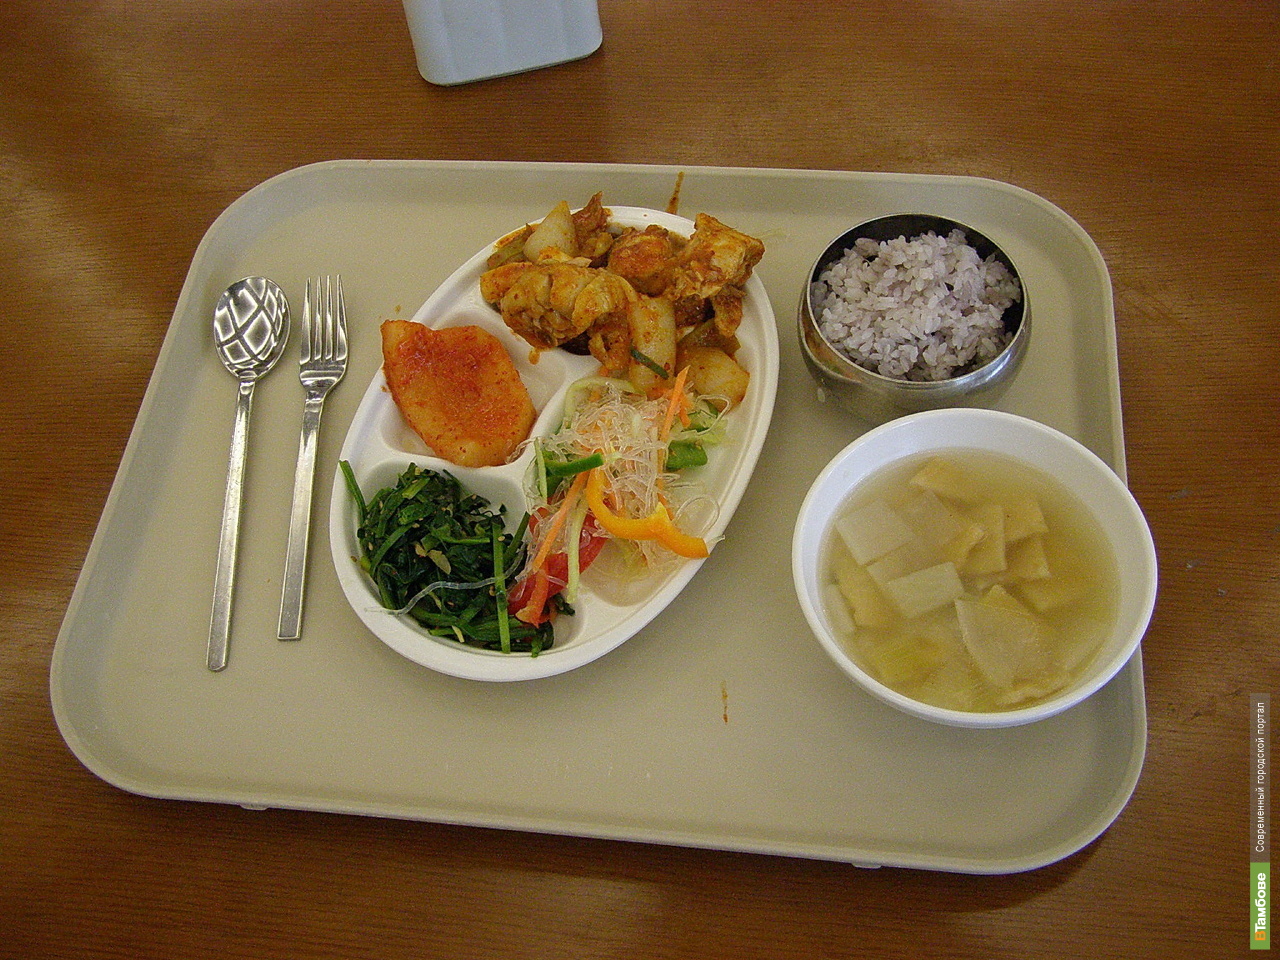 Компенсация обедов. Еда в столовой. Обед. Комплексный обед. Стол с едой в столовой.